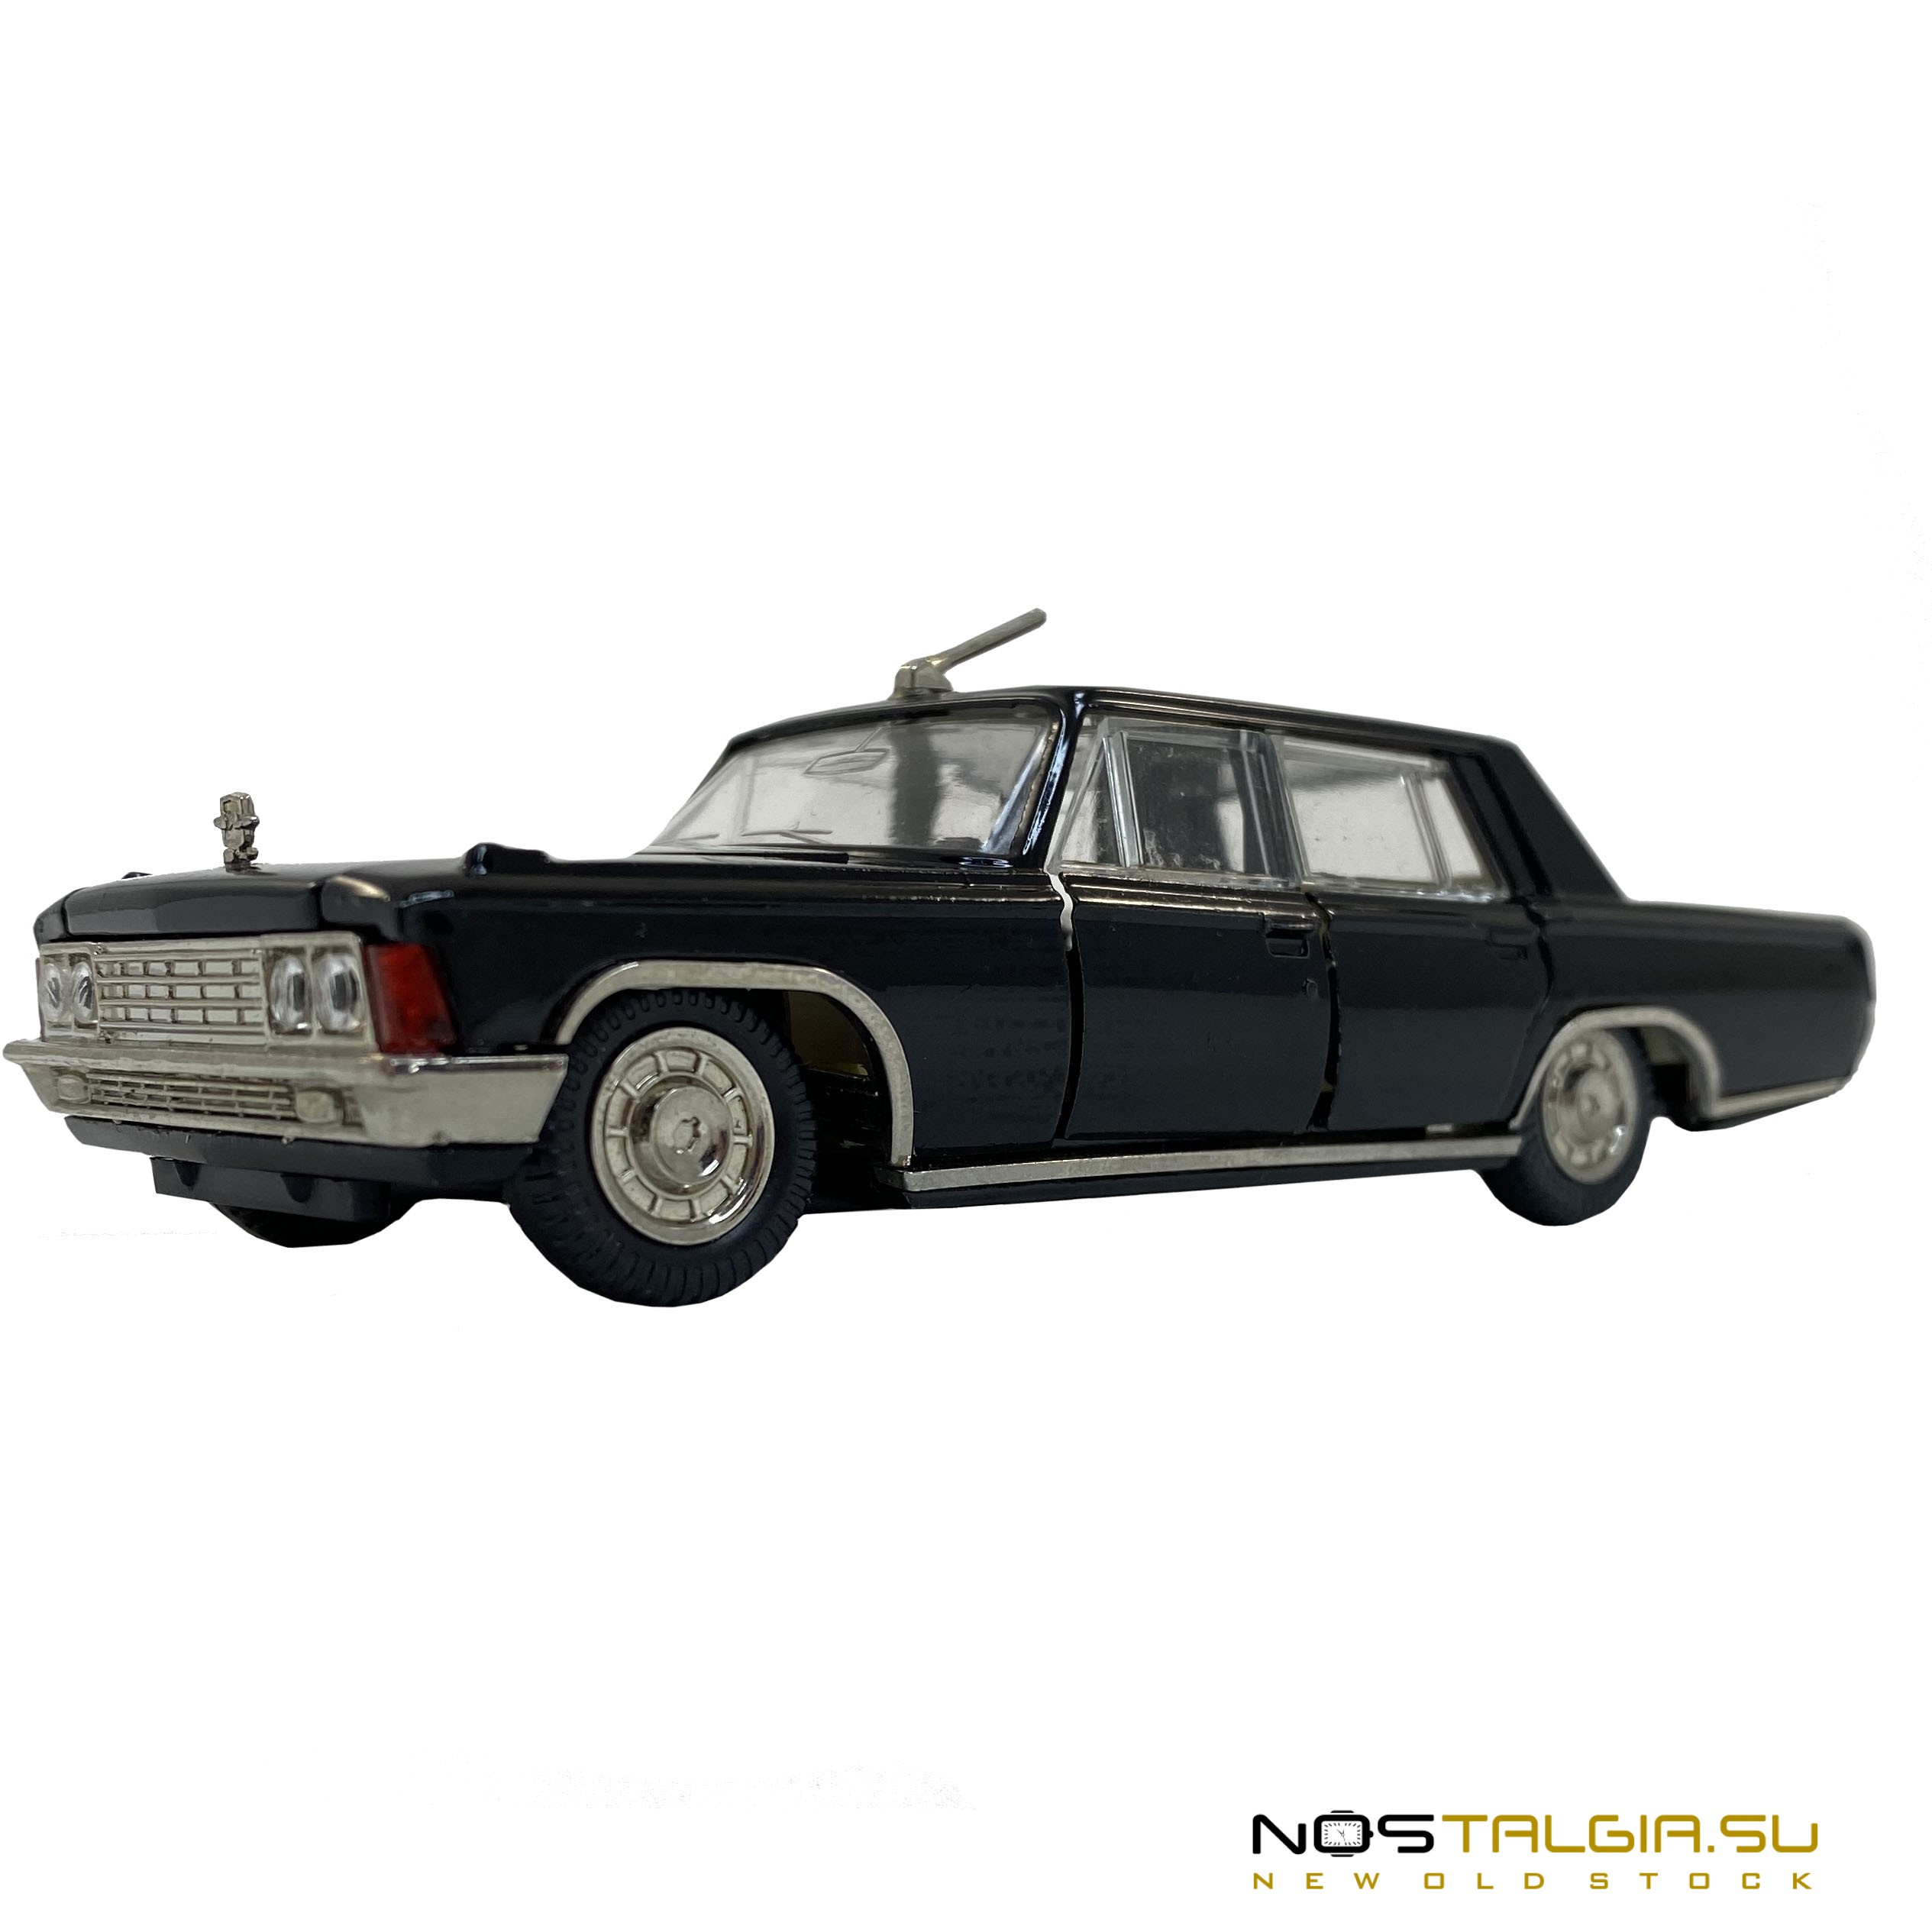 玩具车ZIL-117苏联，黑色，收藏保存，比例1:43